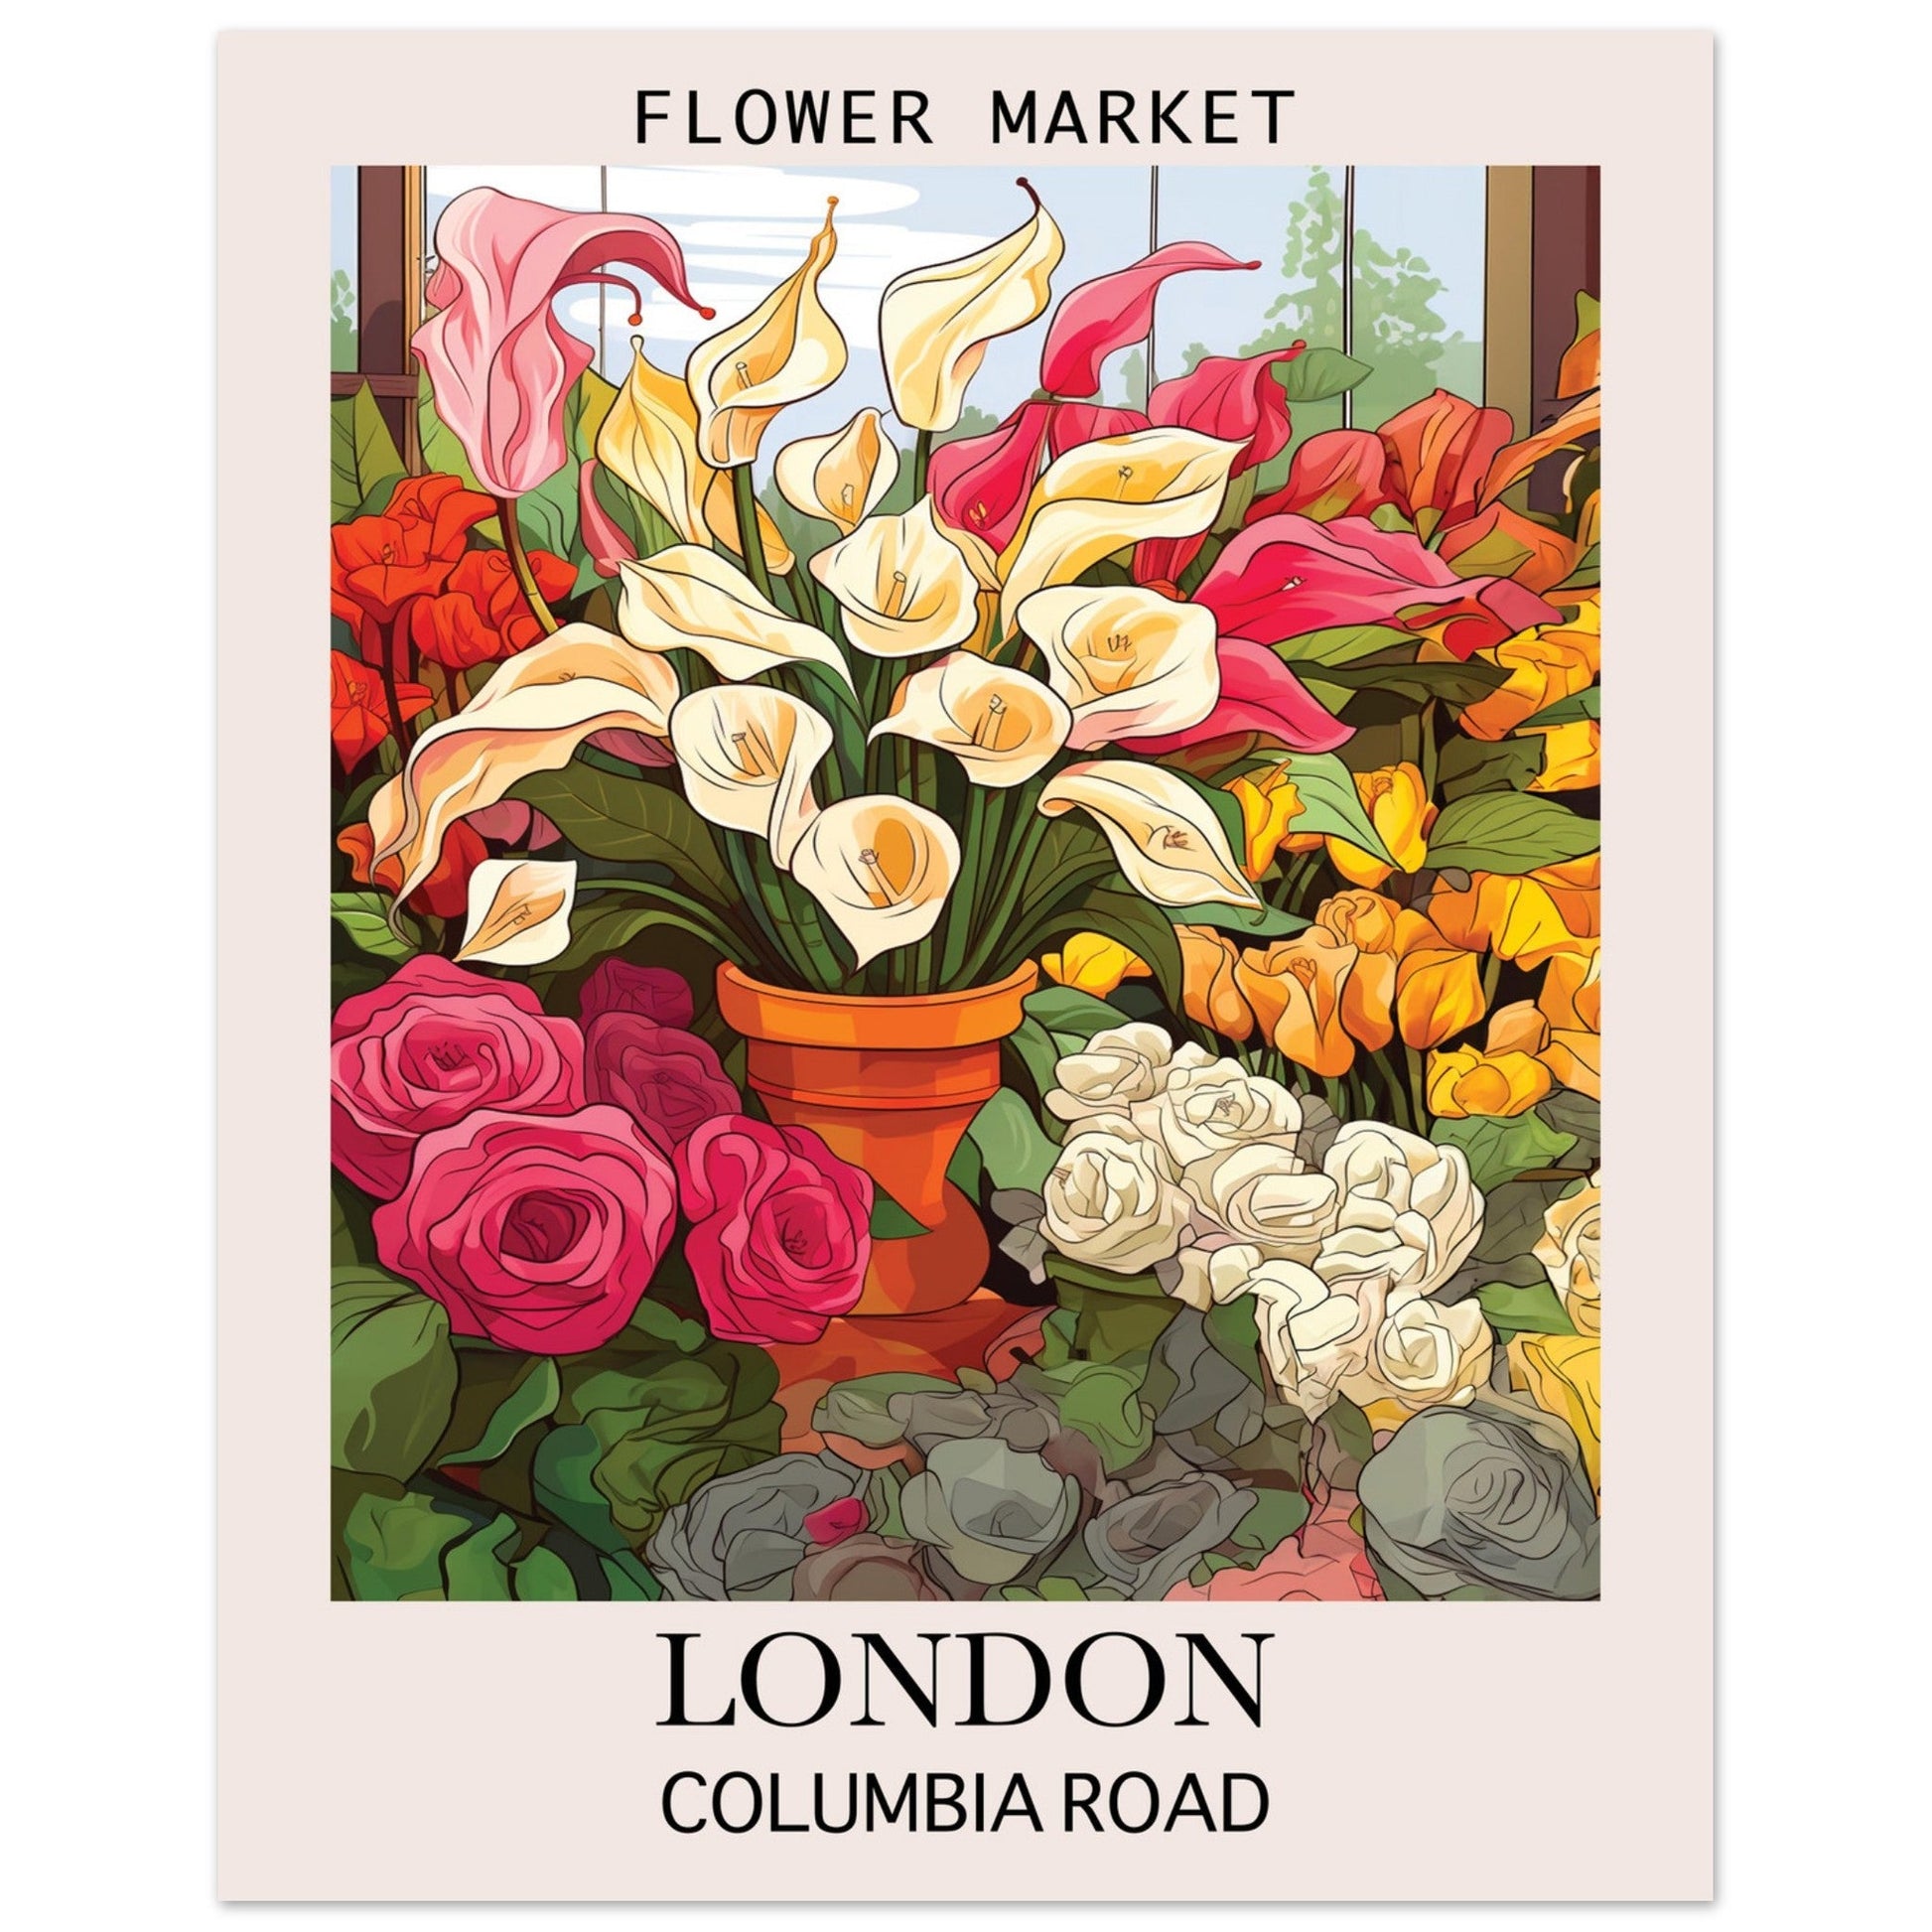 Flower Market London, Columbia Road, Flower Market, London, #illieeart